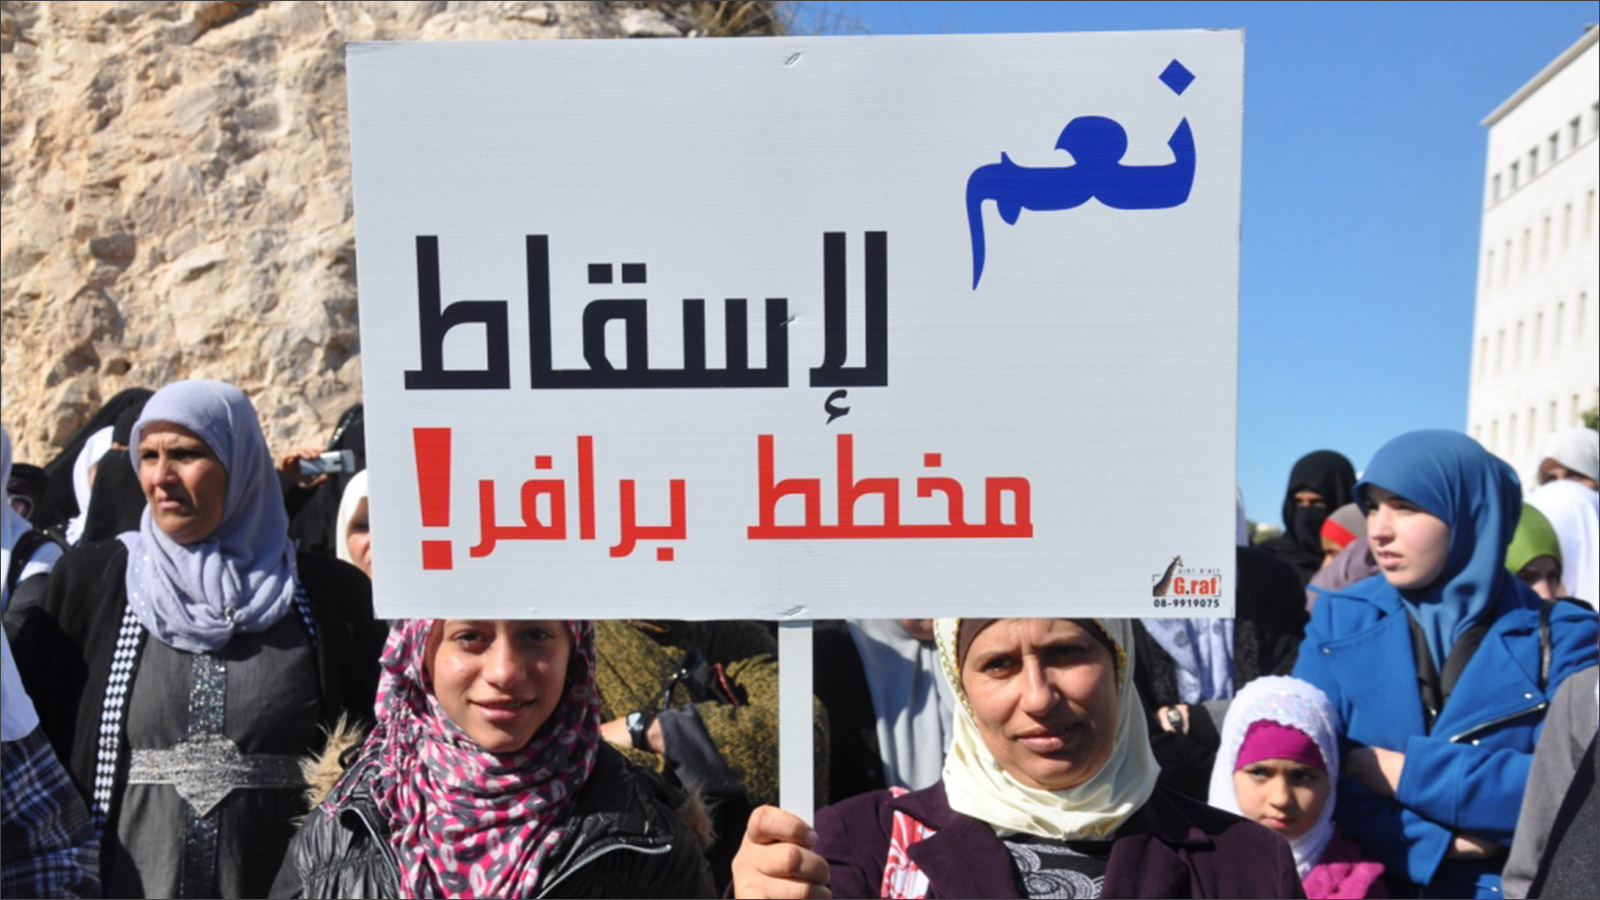 ‪مظاهرات لبدو النقب في القدس رفضا لمخططات الهدم والتشريد وقانون 